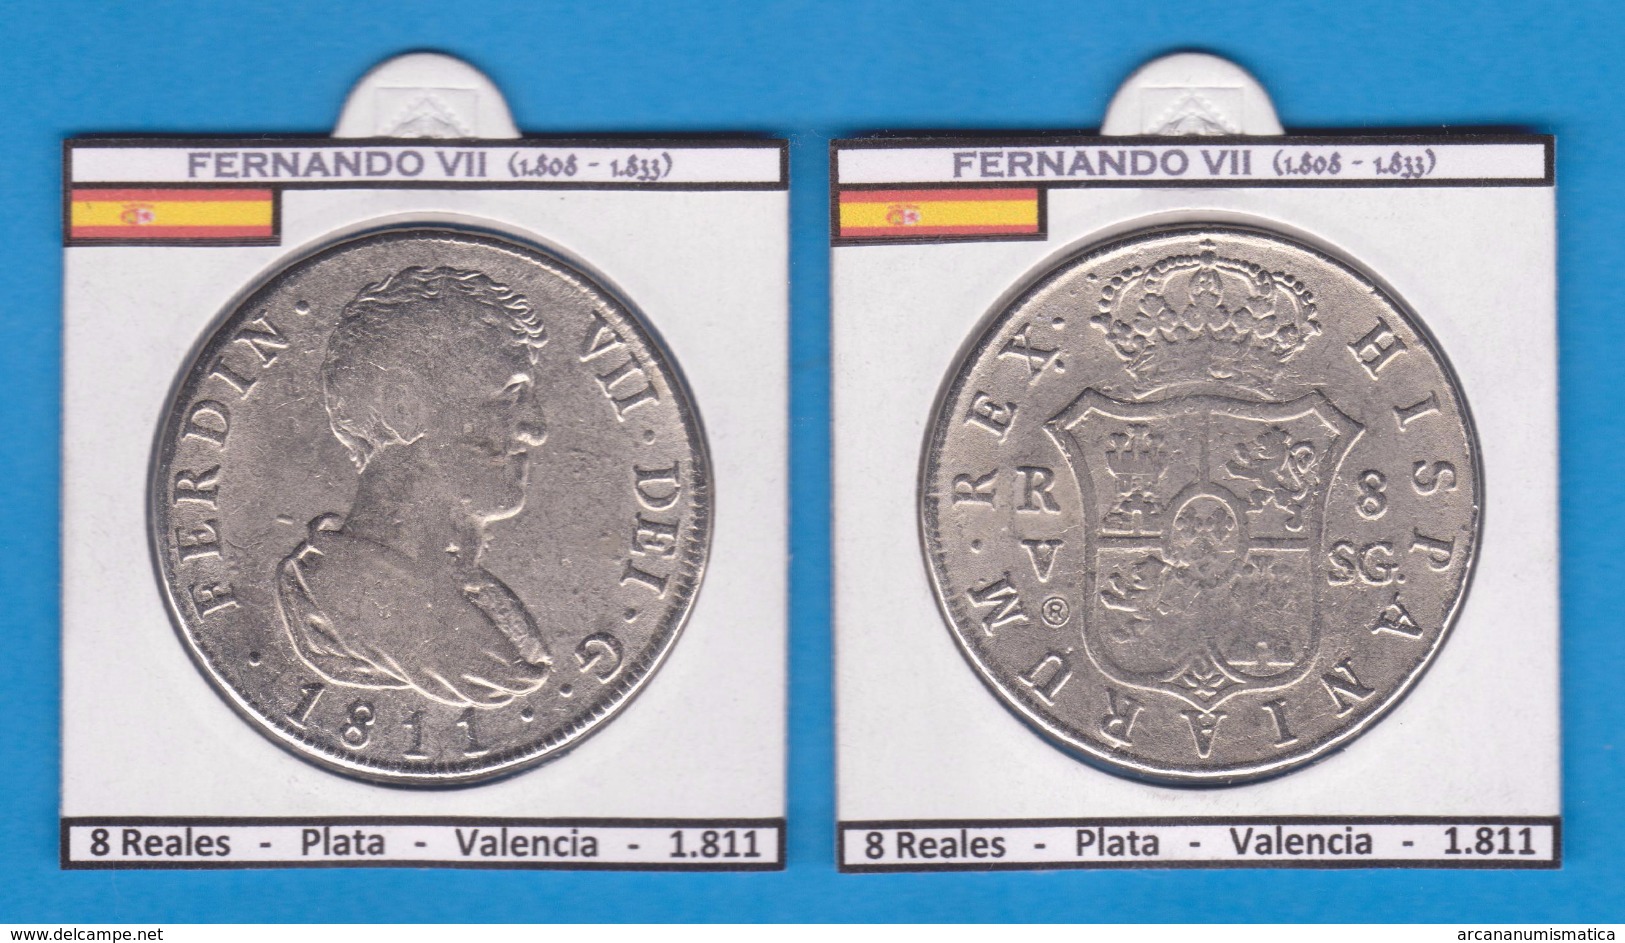 FERNANDO VII 1.808-1.833 8 Reales Plata Valencia 1.811 Réplica  DL-11.371 - Monedas Falsas